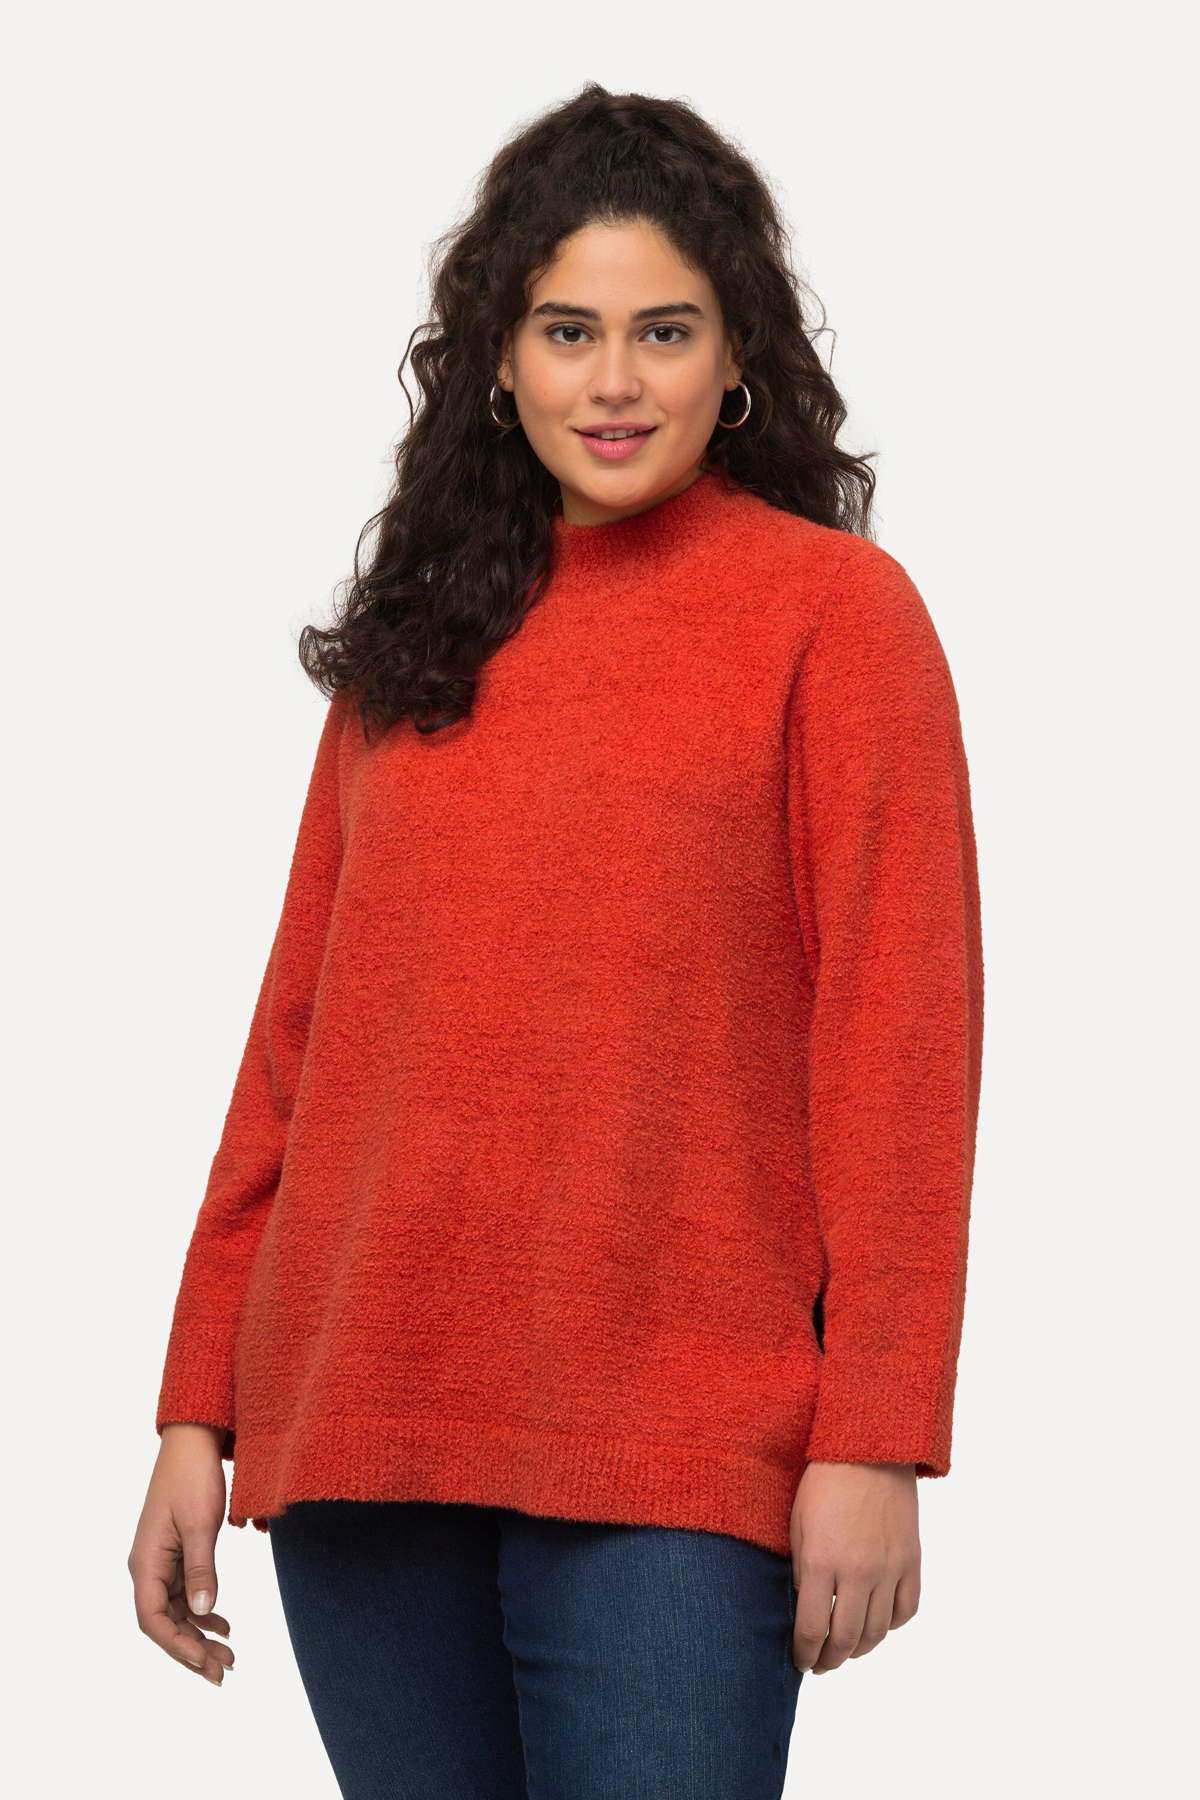 Вязаный свитер-пуловер с мягким воротником-стойкой и длинными рукавами.